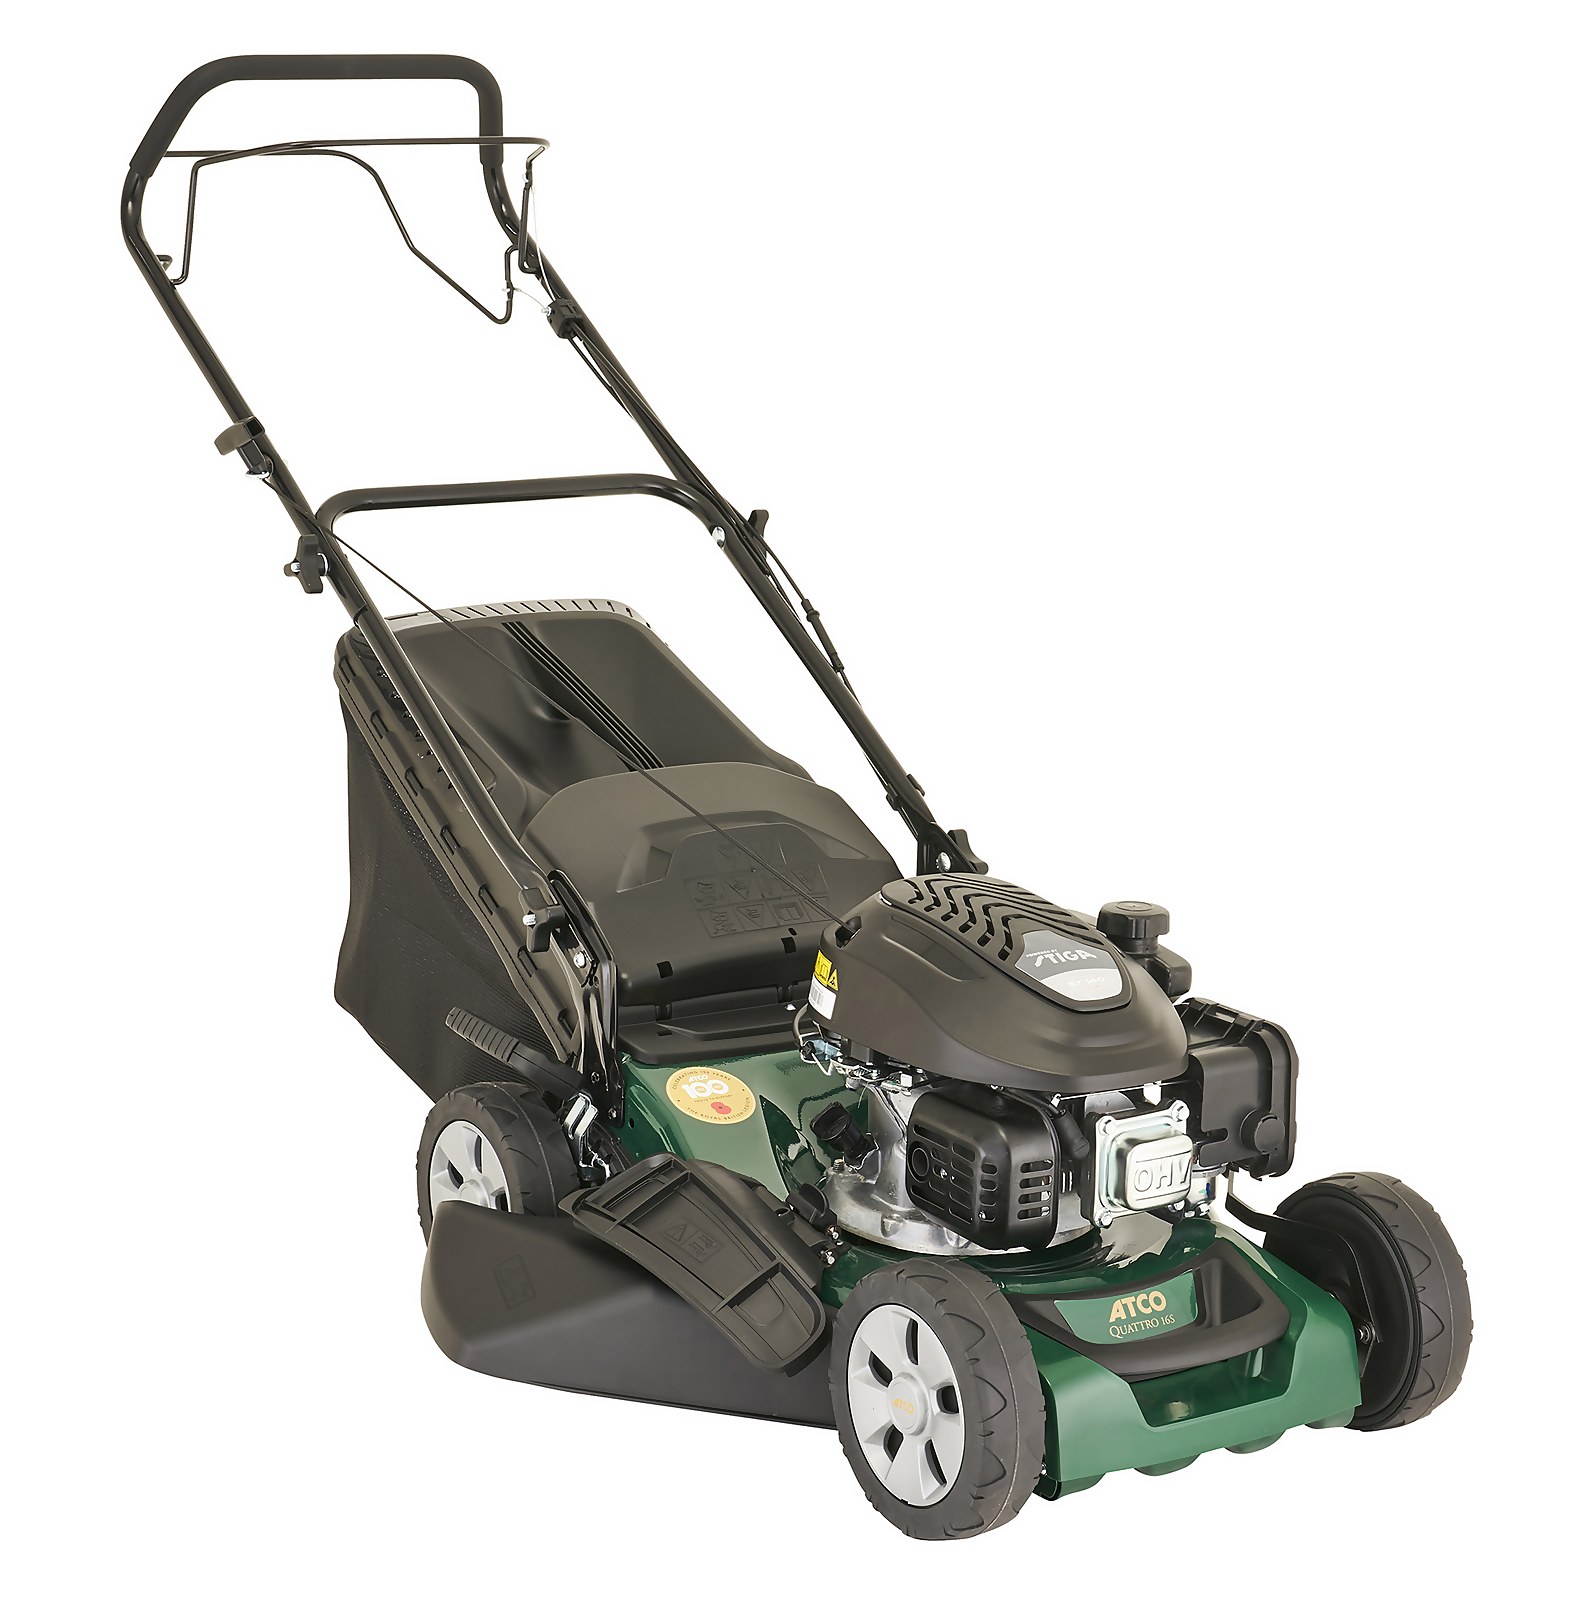 Photo of Atco Quattro 16s Petrol Lawn Mower - 41cm